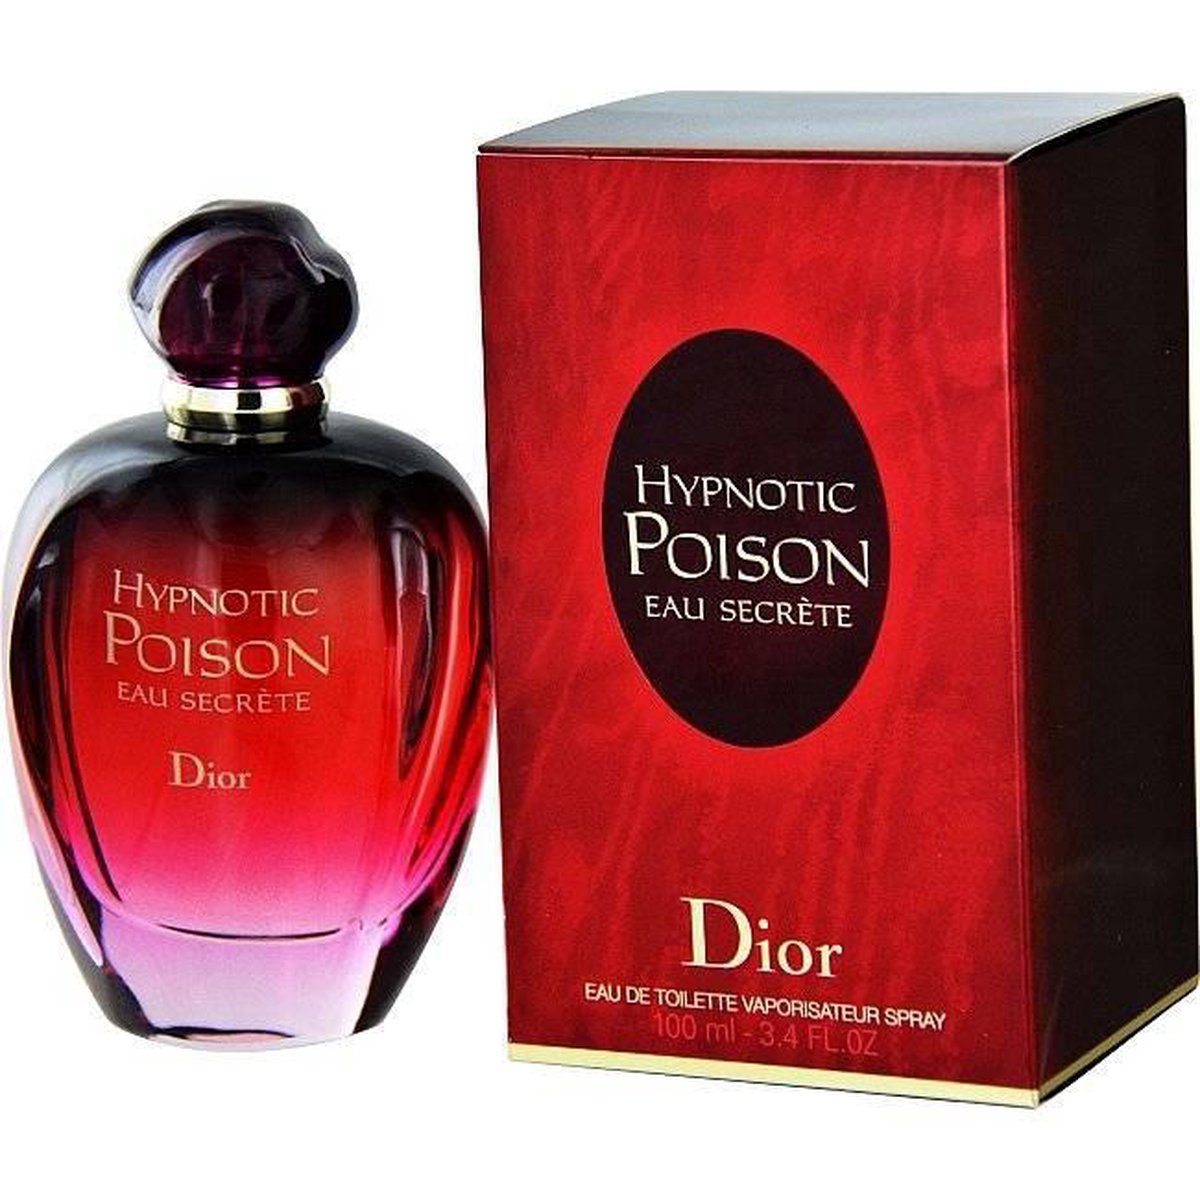 Dior Hypnotic Poison Eau Secrete 100 ml - Eau de toilette - for Women |  bol.com